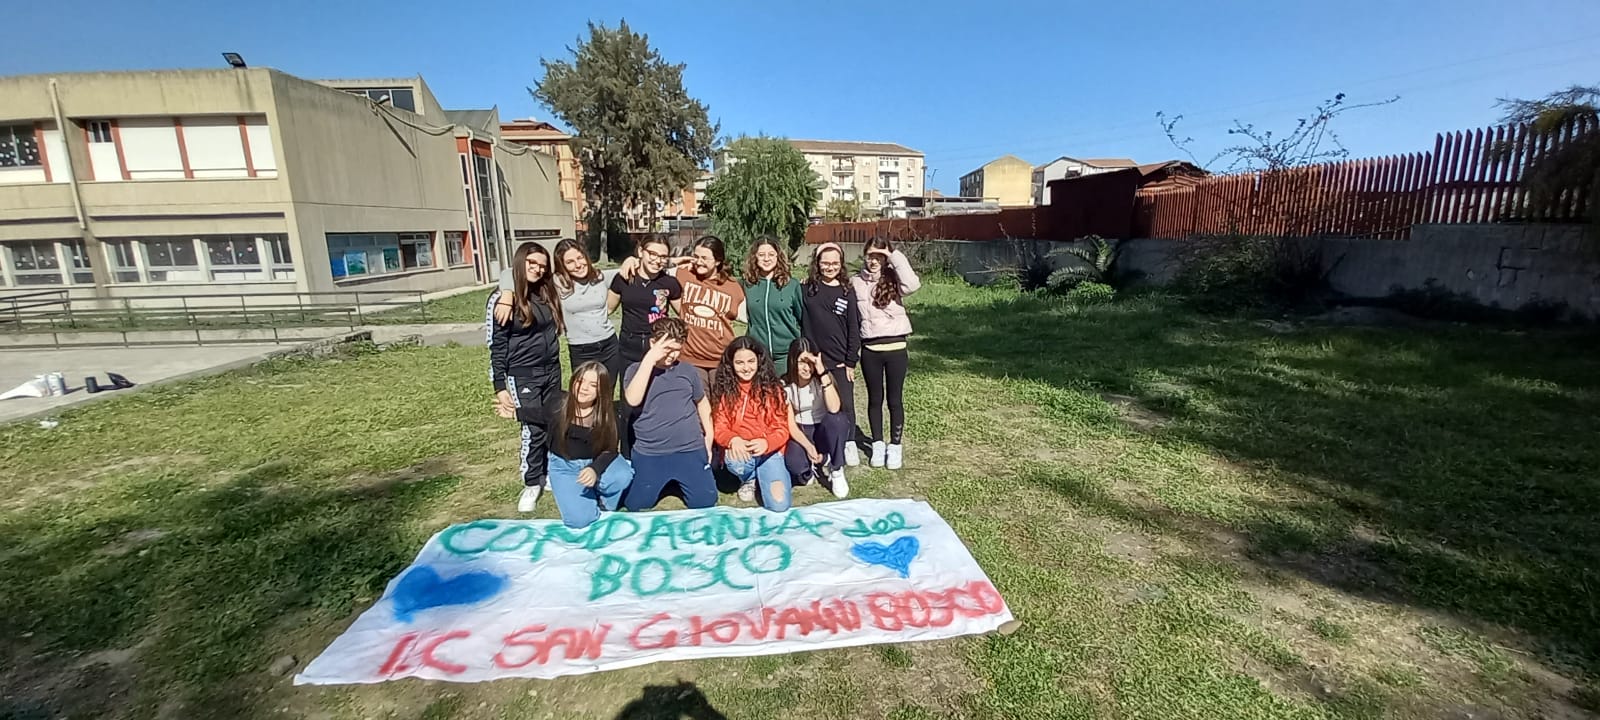 Progetti Pon, tredici moduli extra-curricolari all’I.C.S. “San Giovanni Bosco” di Catania